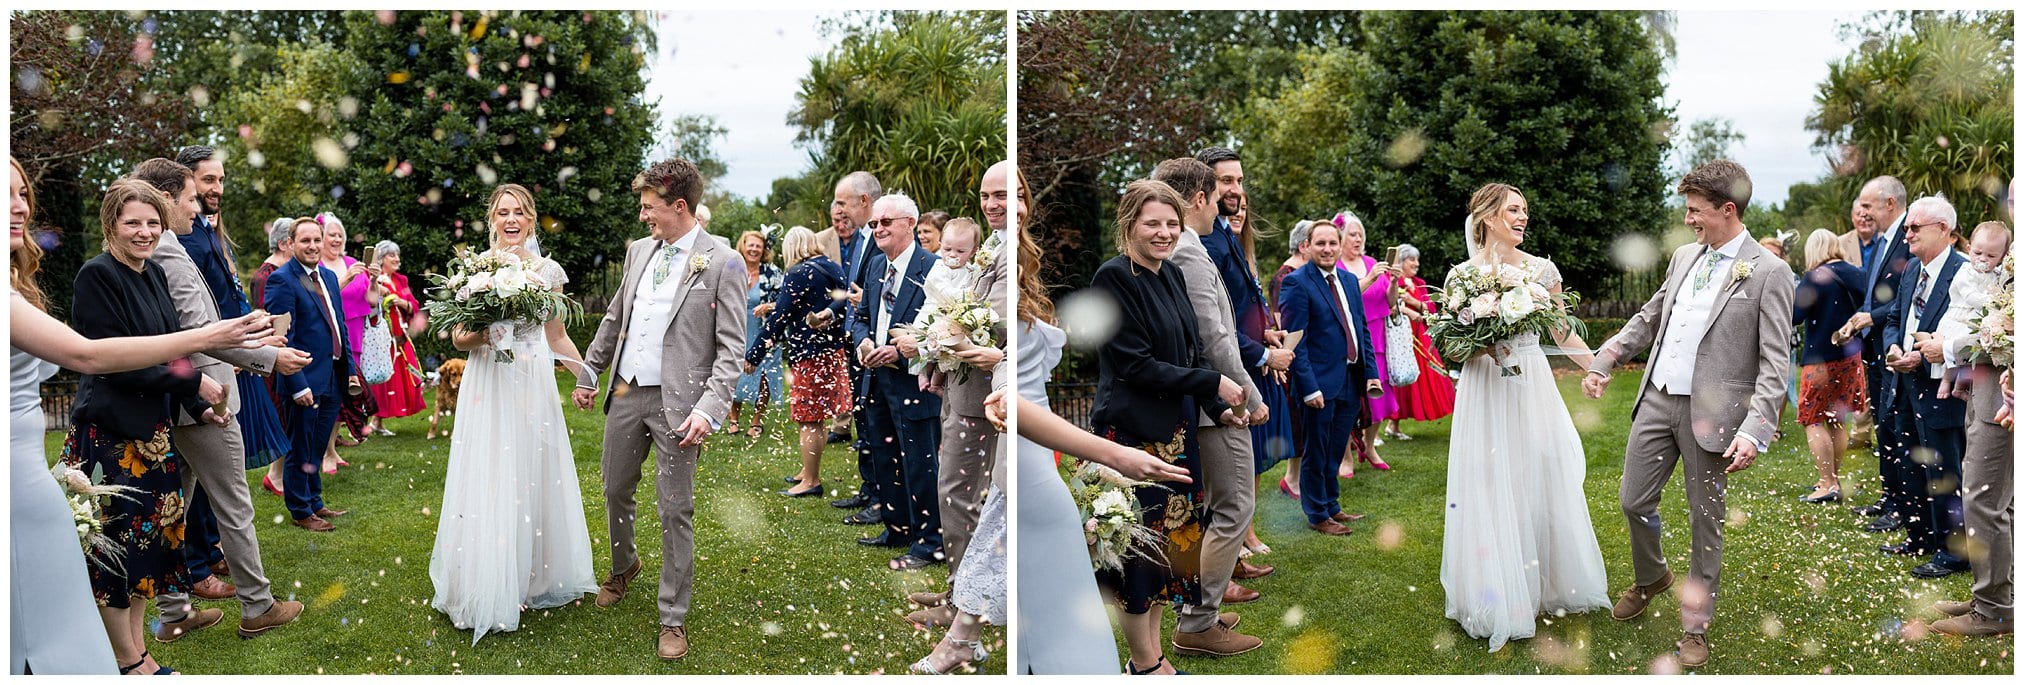 bride and groom confetti walk